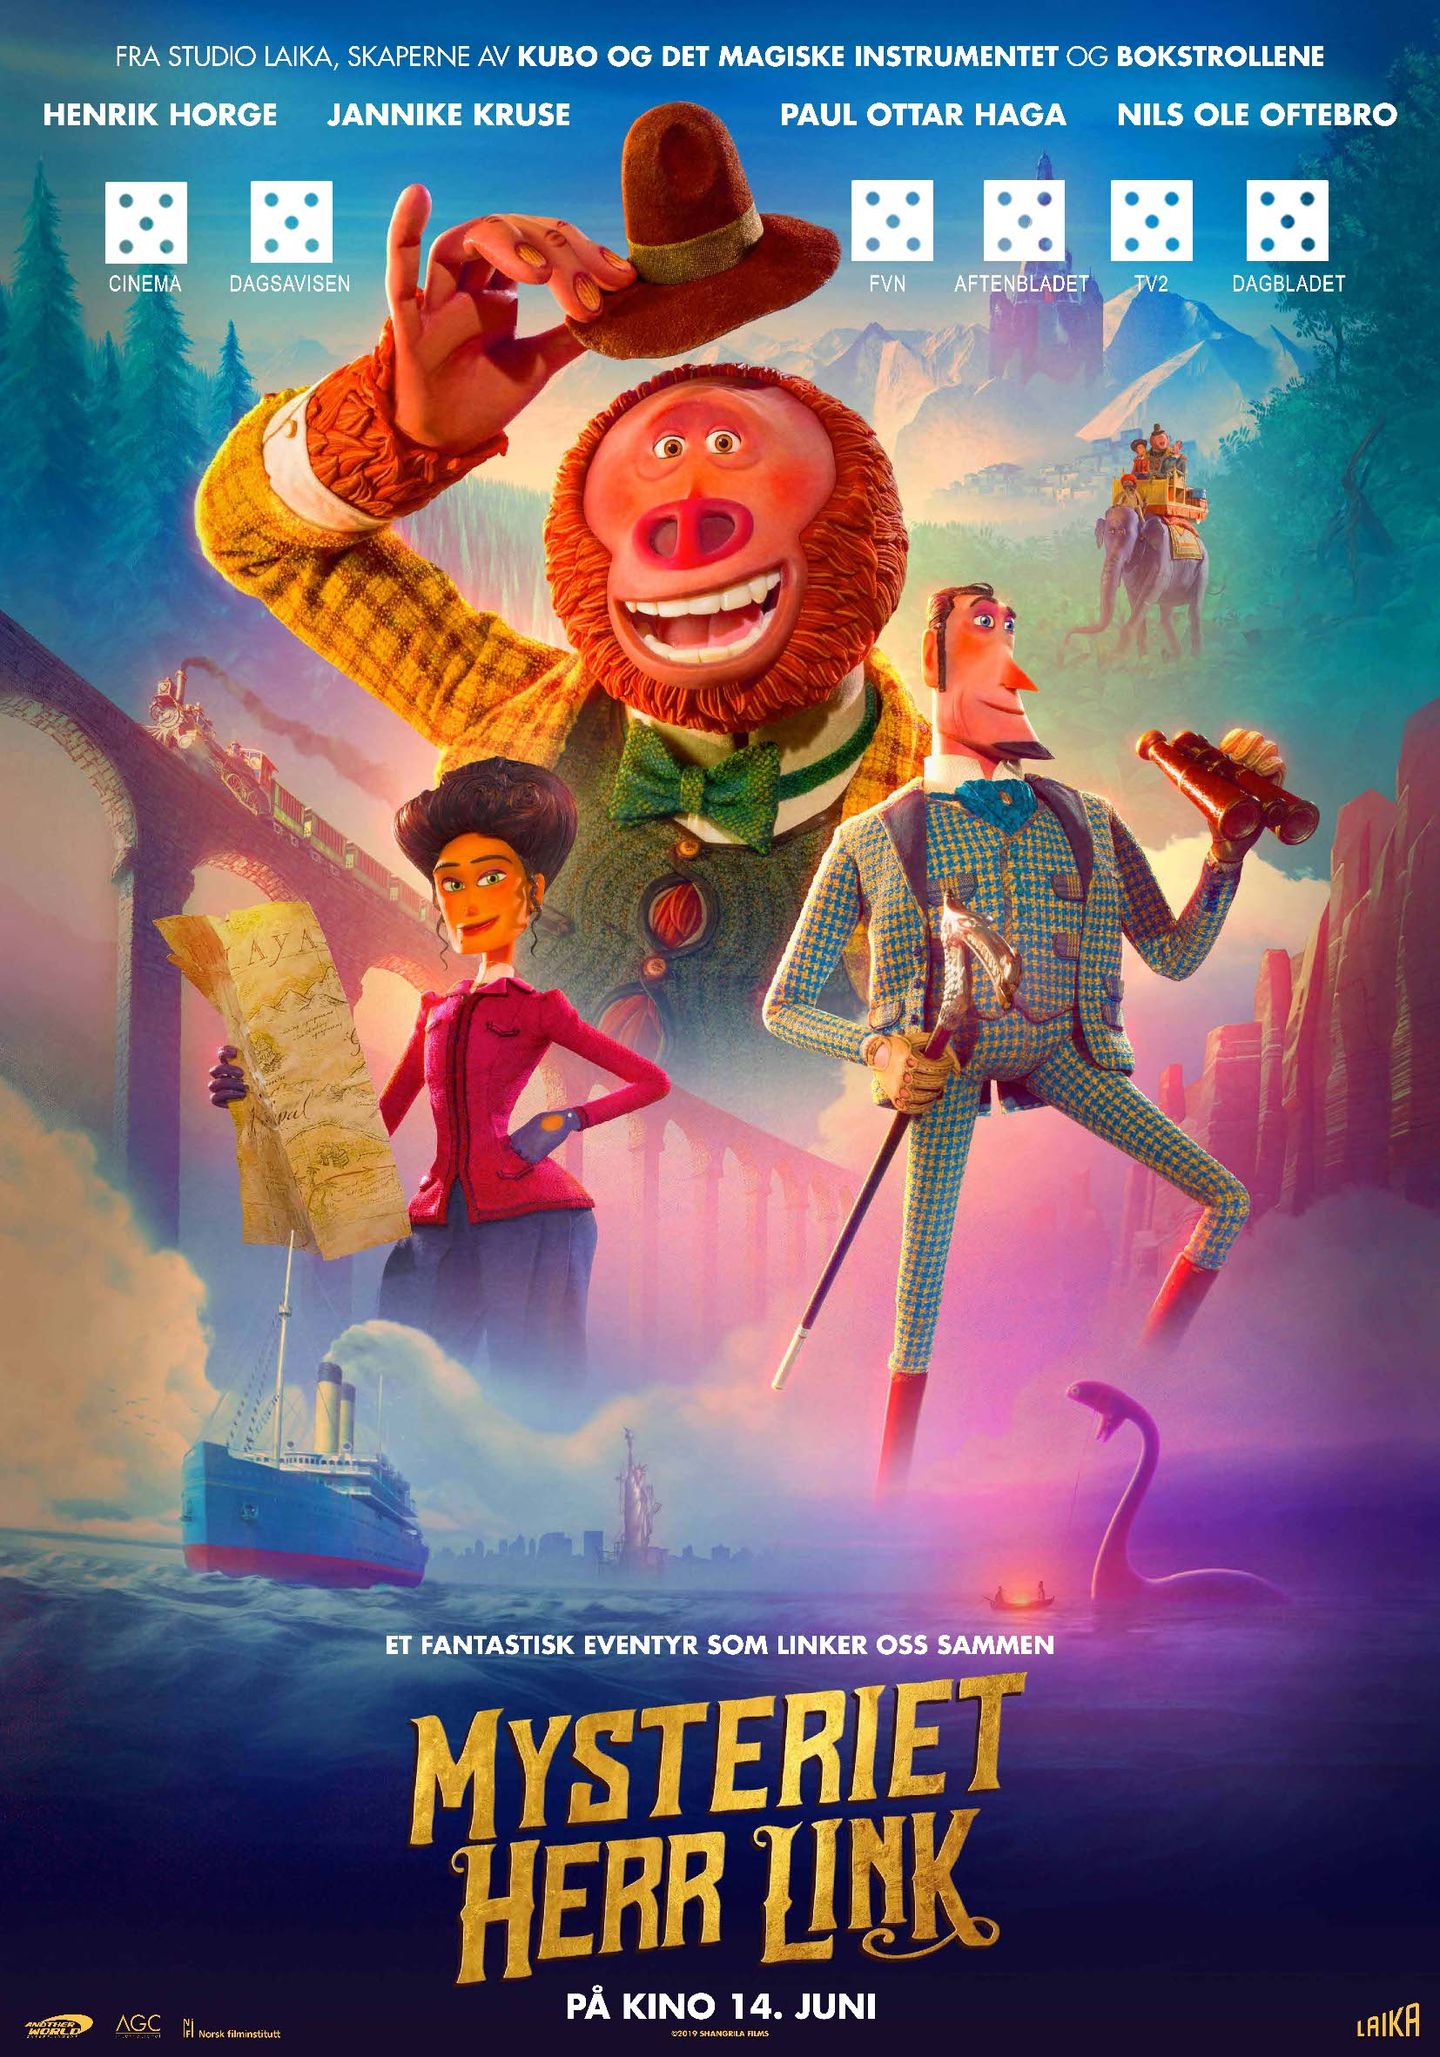 Plakat for 'Mysteriet Herr Link'